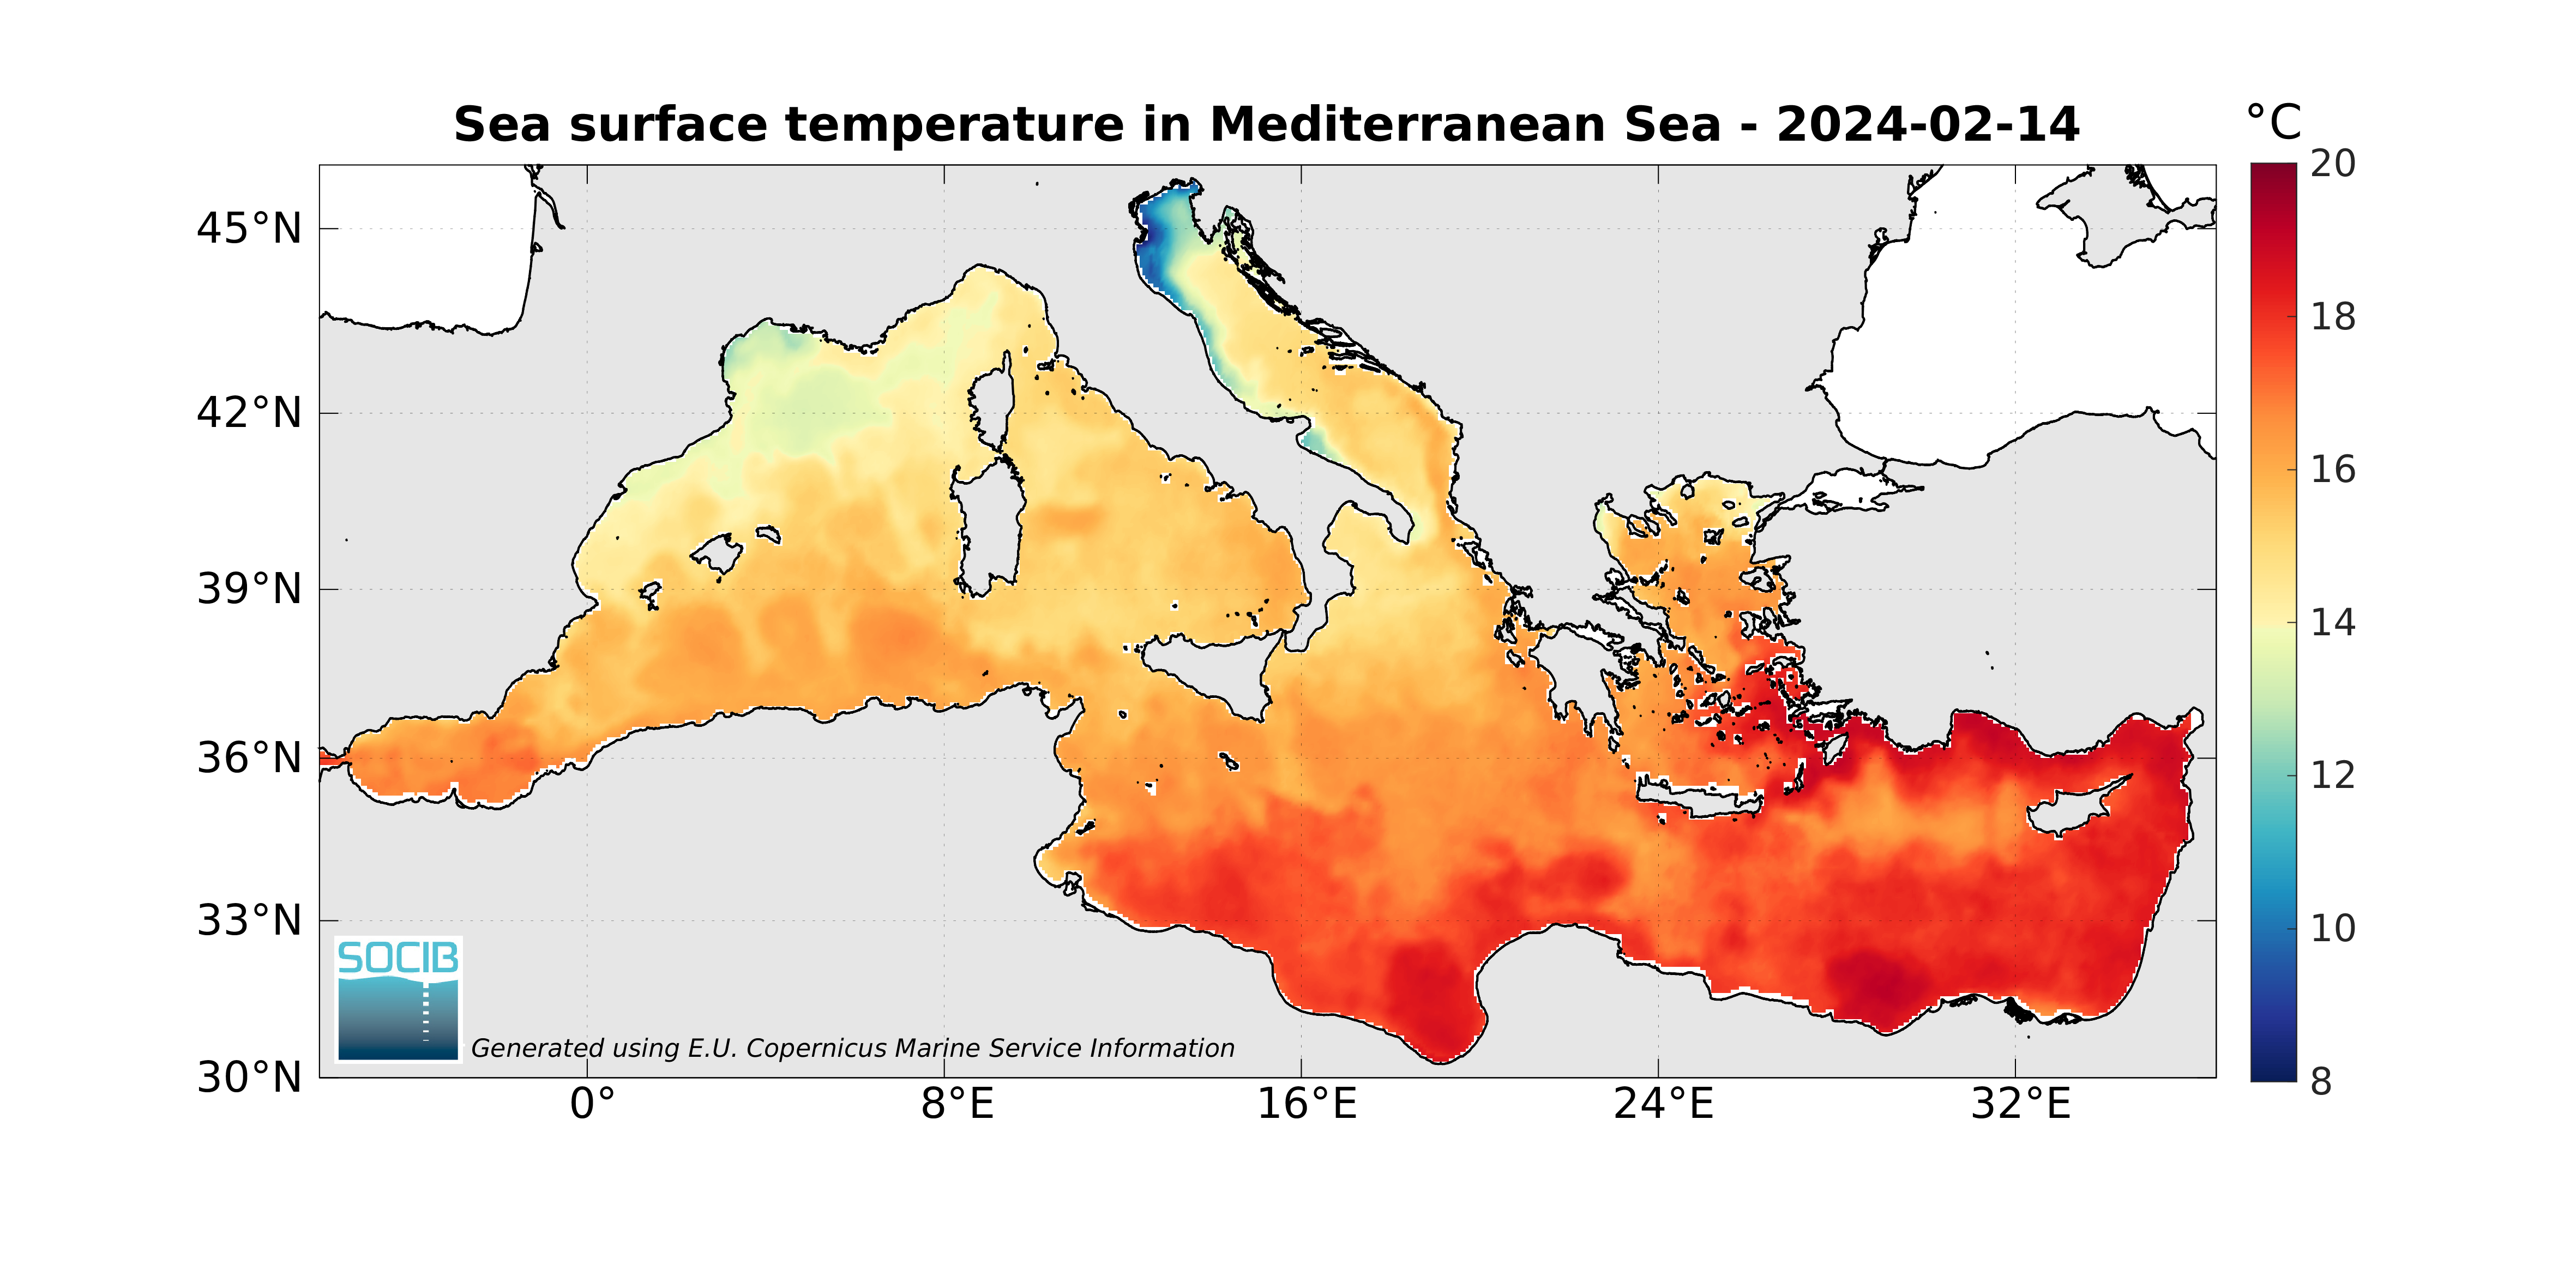 Akdeniz’de deniz suyu kış ortasında iki aydır sıcak hava dalgasına maruz kalıyor